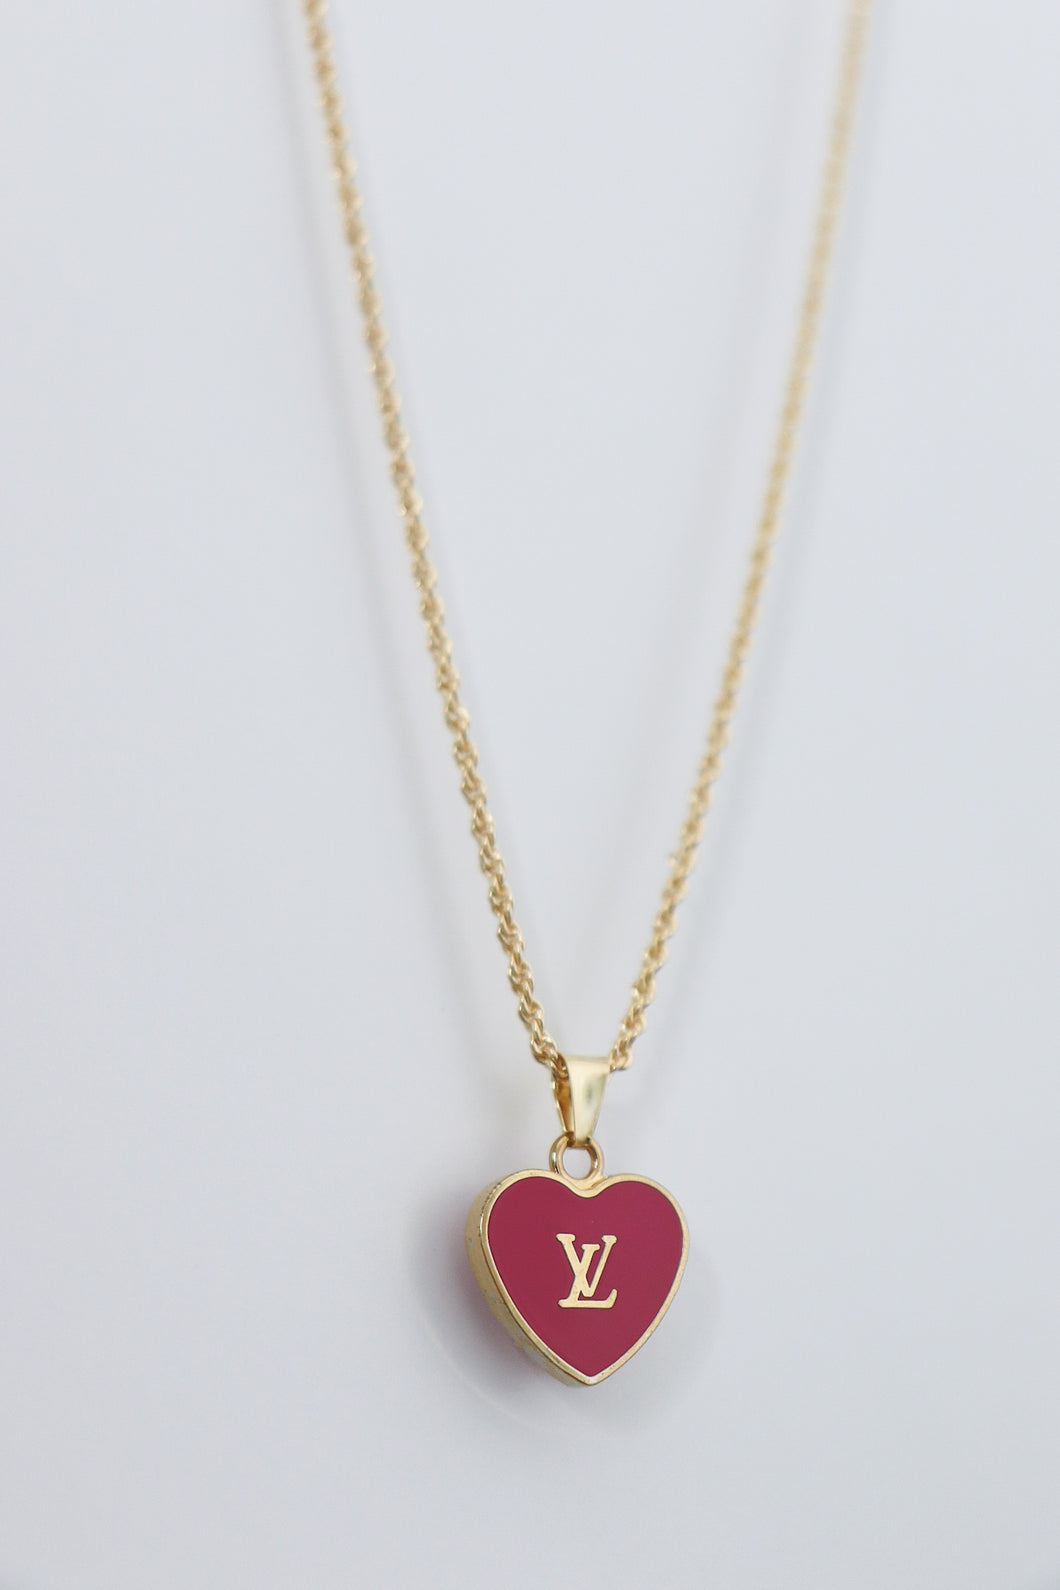 Louis Vuitton red heart